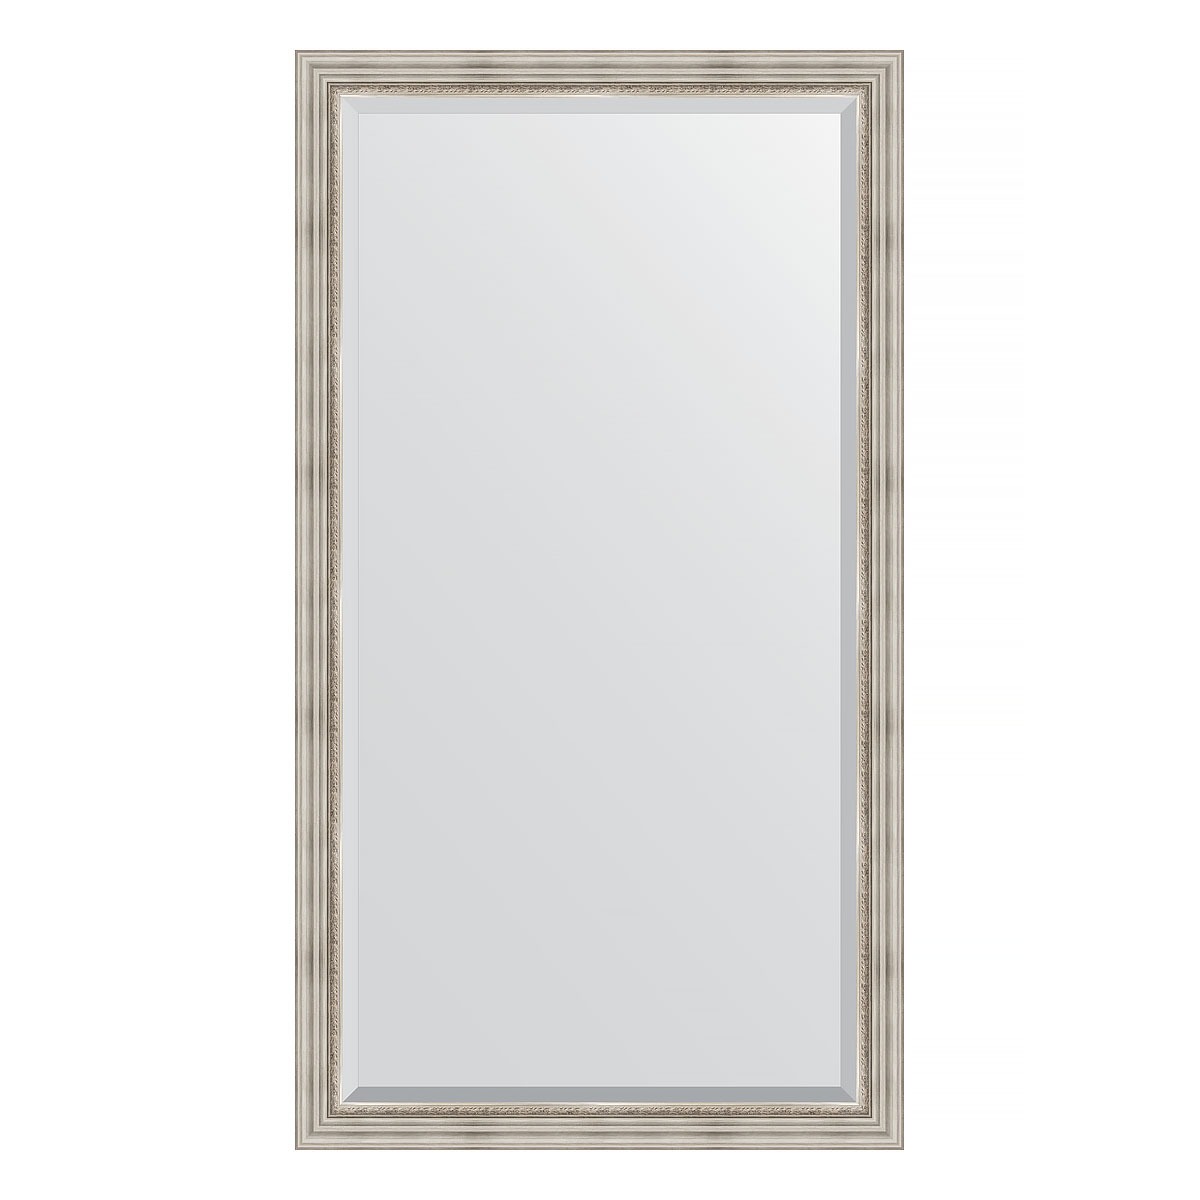 Зеркало напольное с фацетом в багетной раме Evoform римское серебро 88 мм 111x201 см зеркало напольное с фацетом в багетной раме evoform римское серебро 88 мм 111x201 см